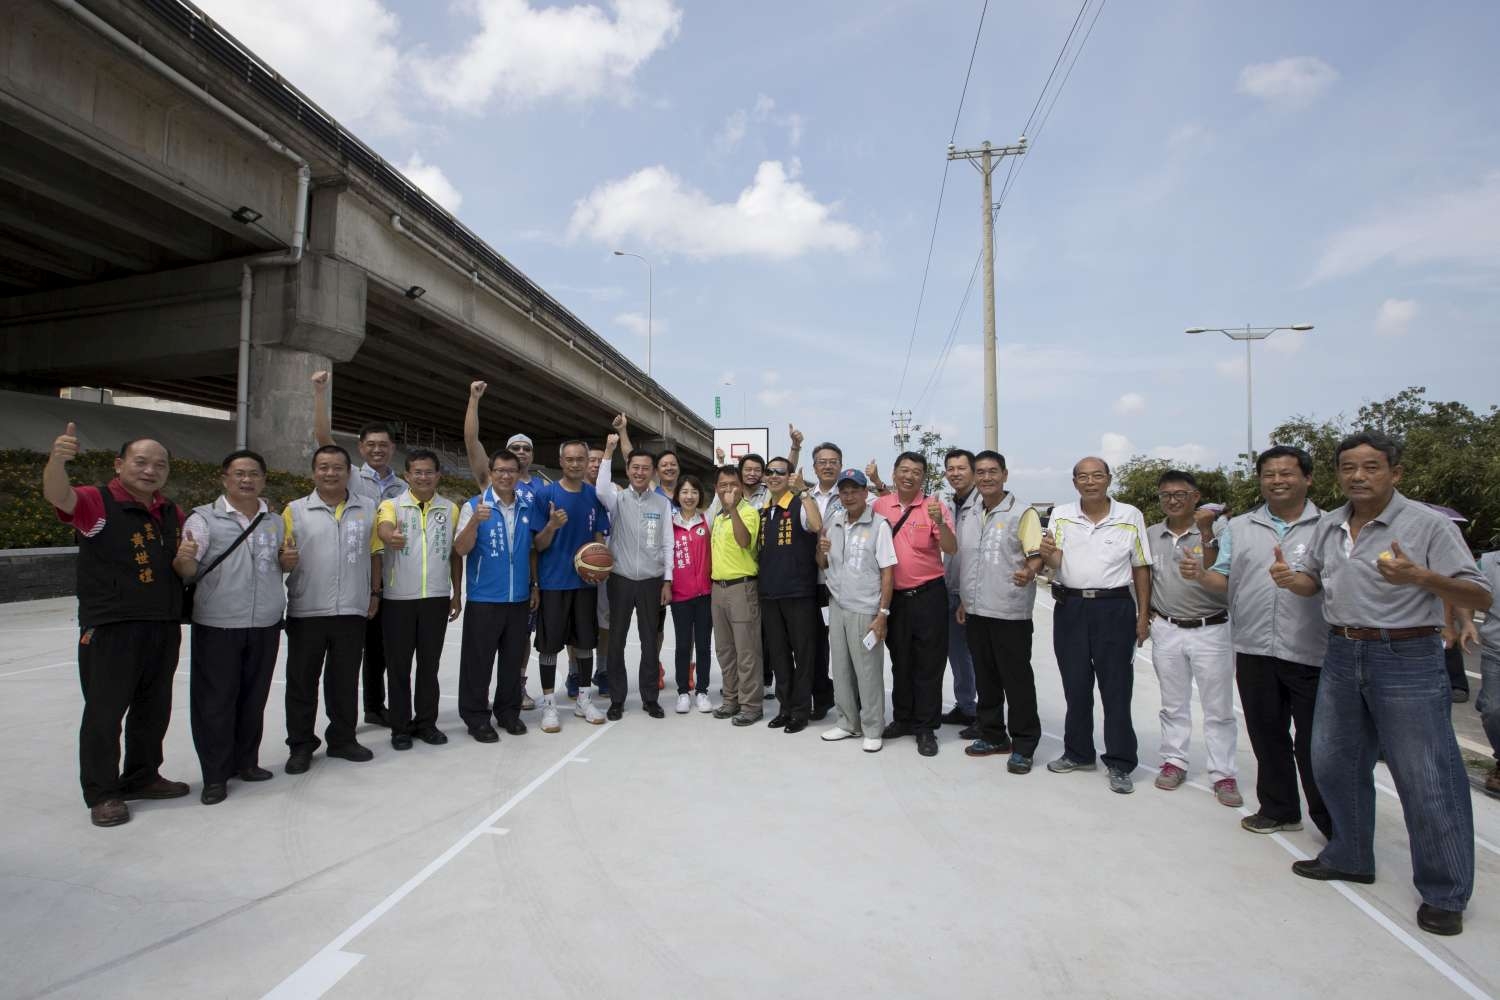 完善溪州橋遊憩設施、打造無障礙跨堤引道 林智堅市長推新竹左岸新風貌